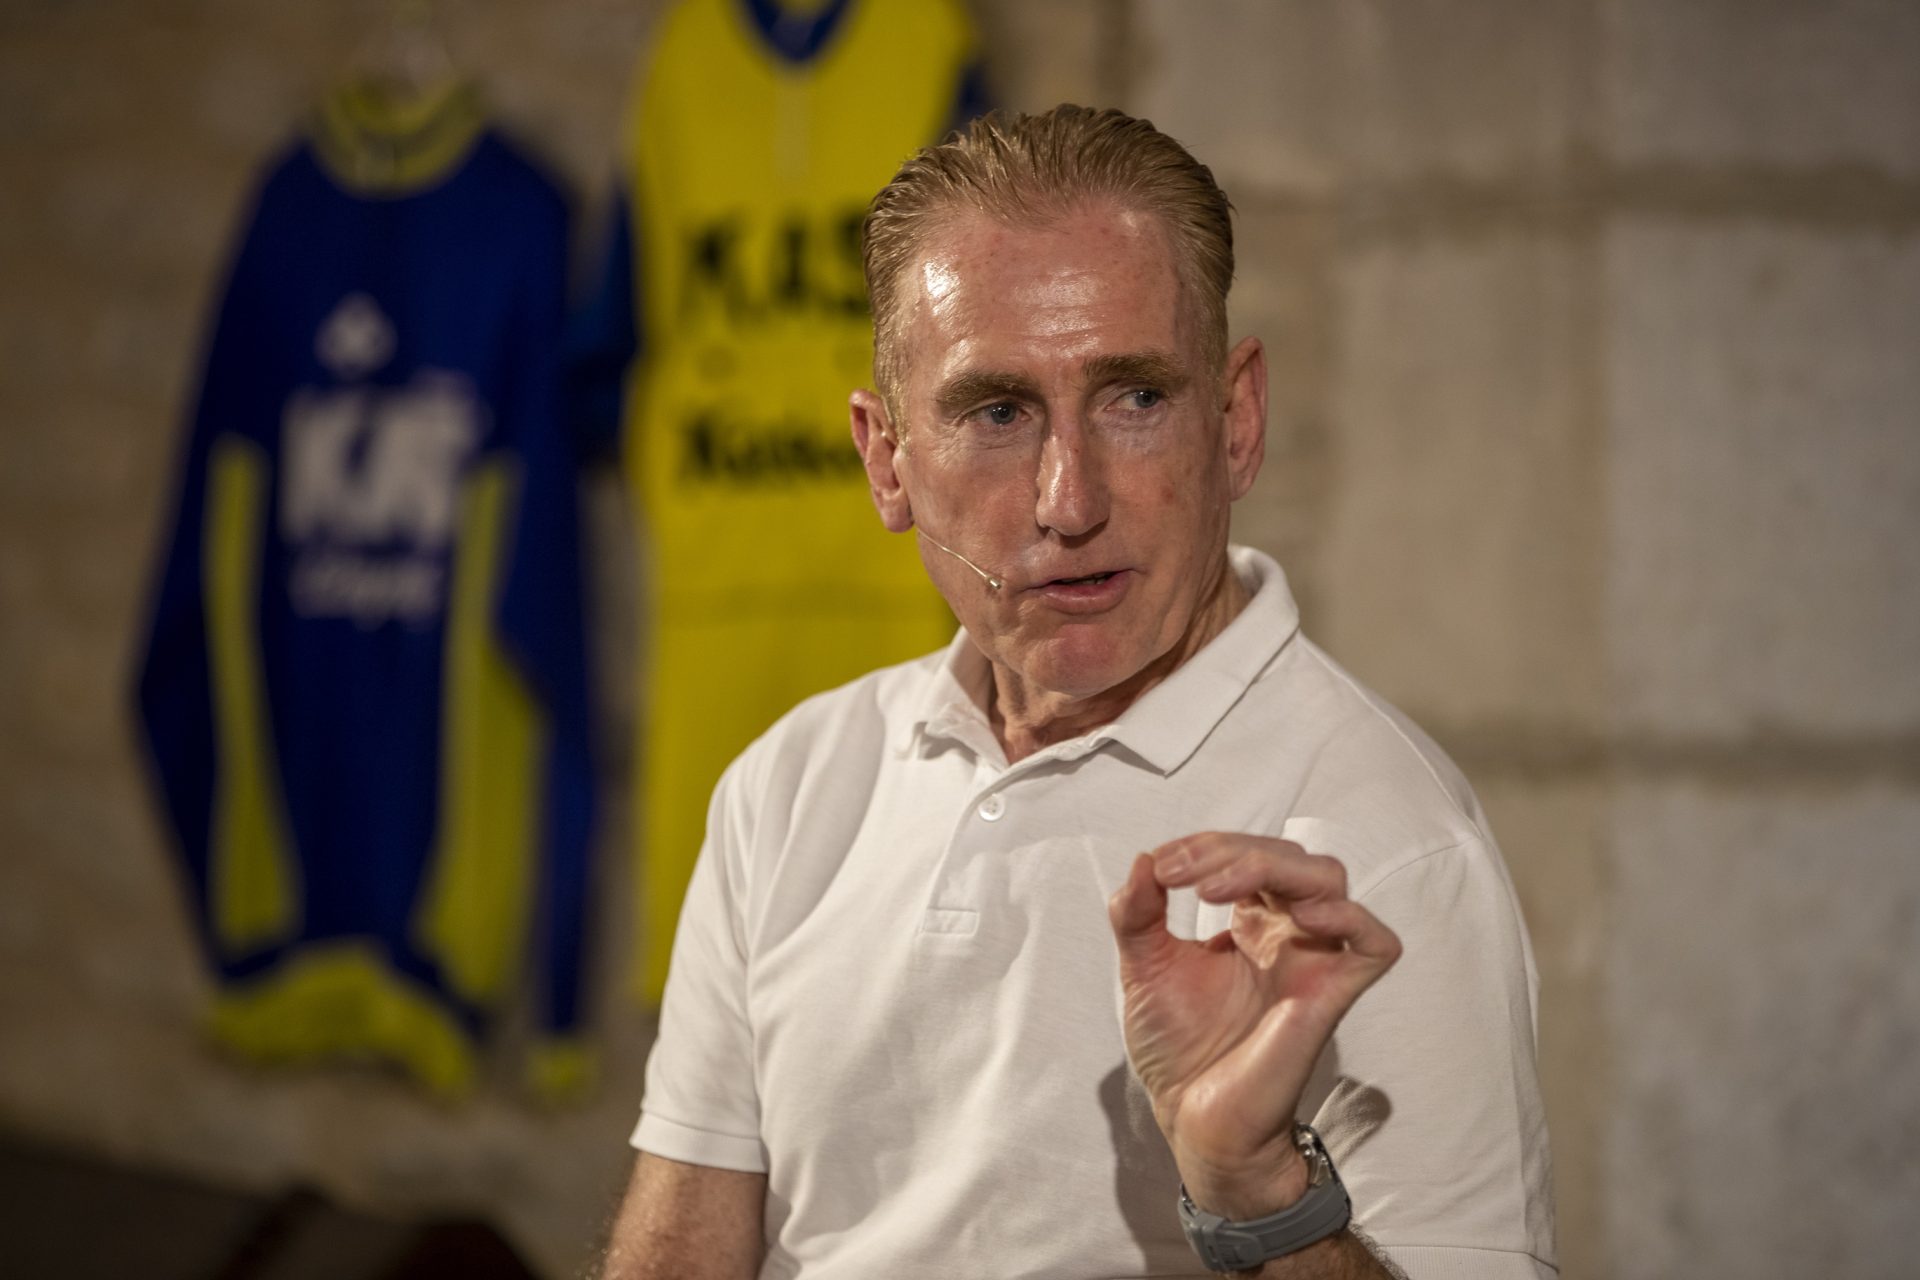 El ex-ciclista irlandés Sean Kelly, ofrece en Vitoria una charla sobre el equipo ciclista KAS, del que formó parte en los años 80.EFE/David Aguilar